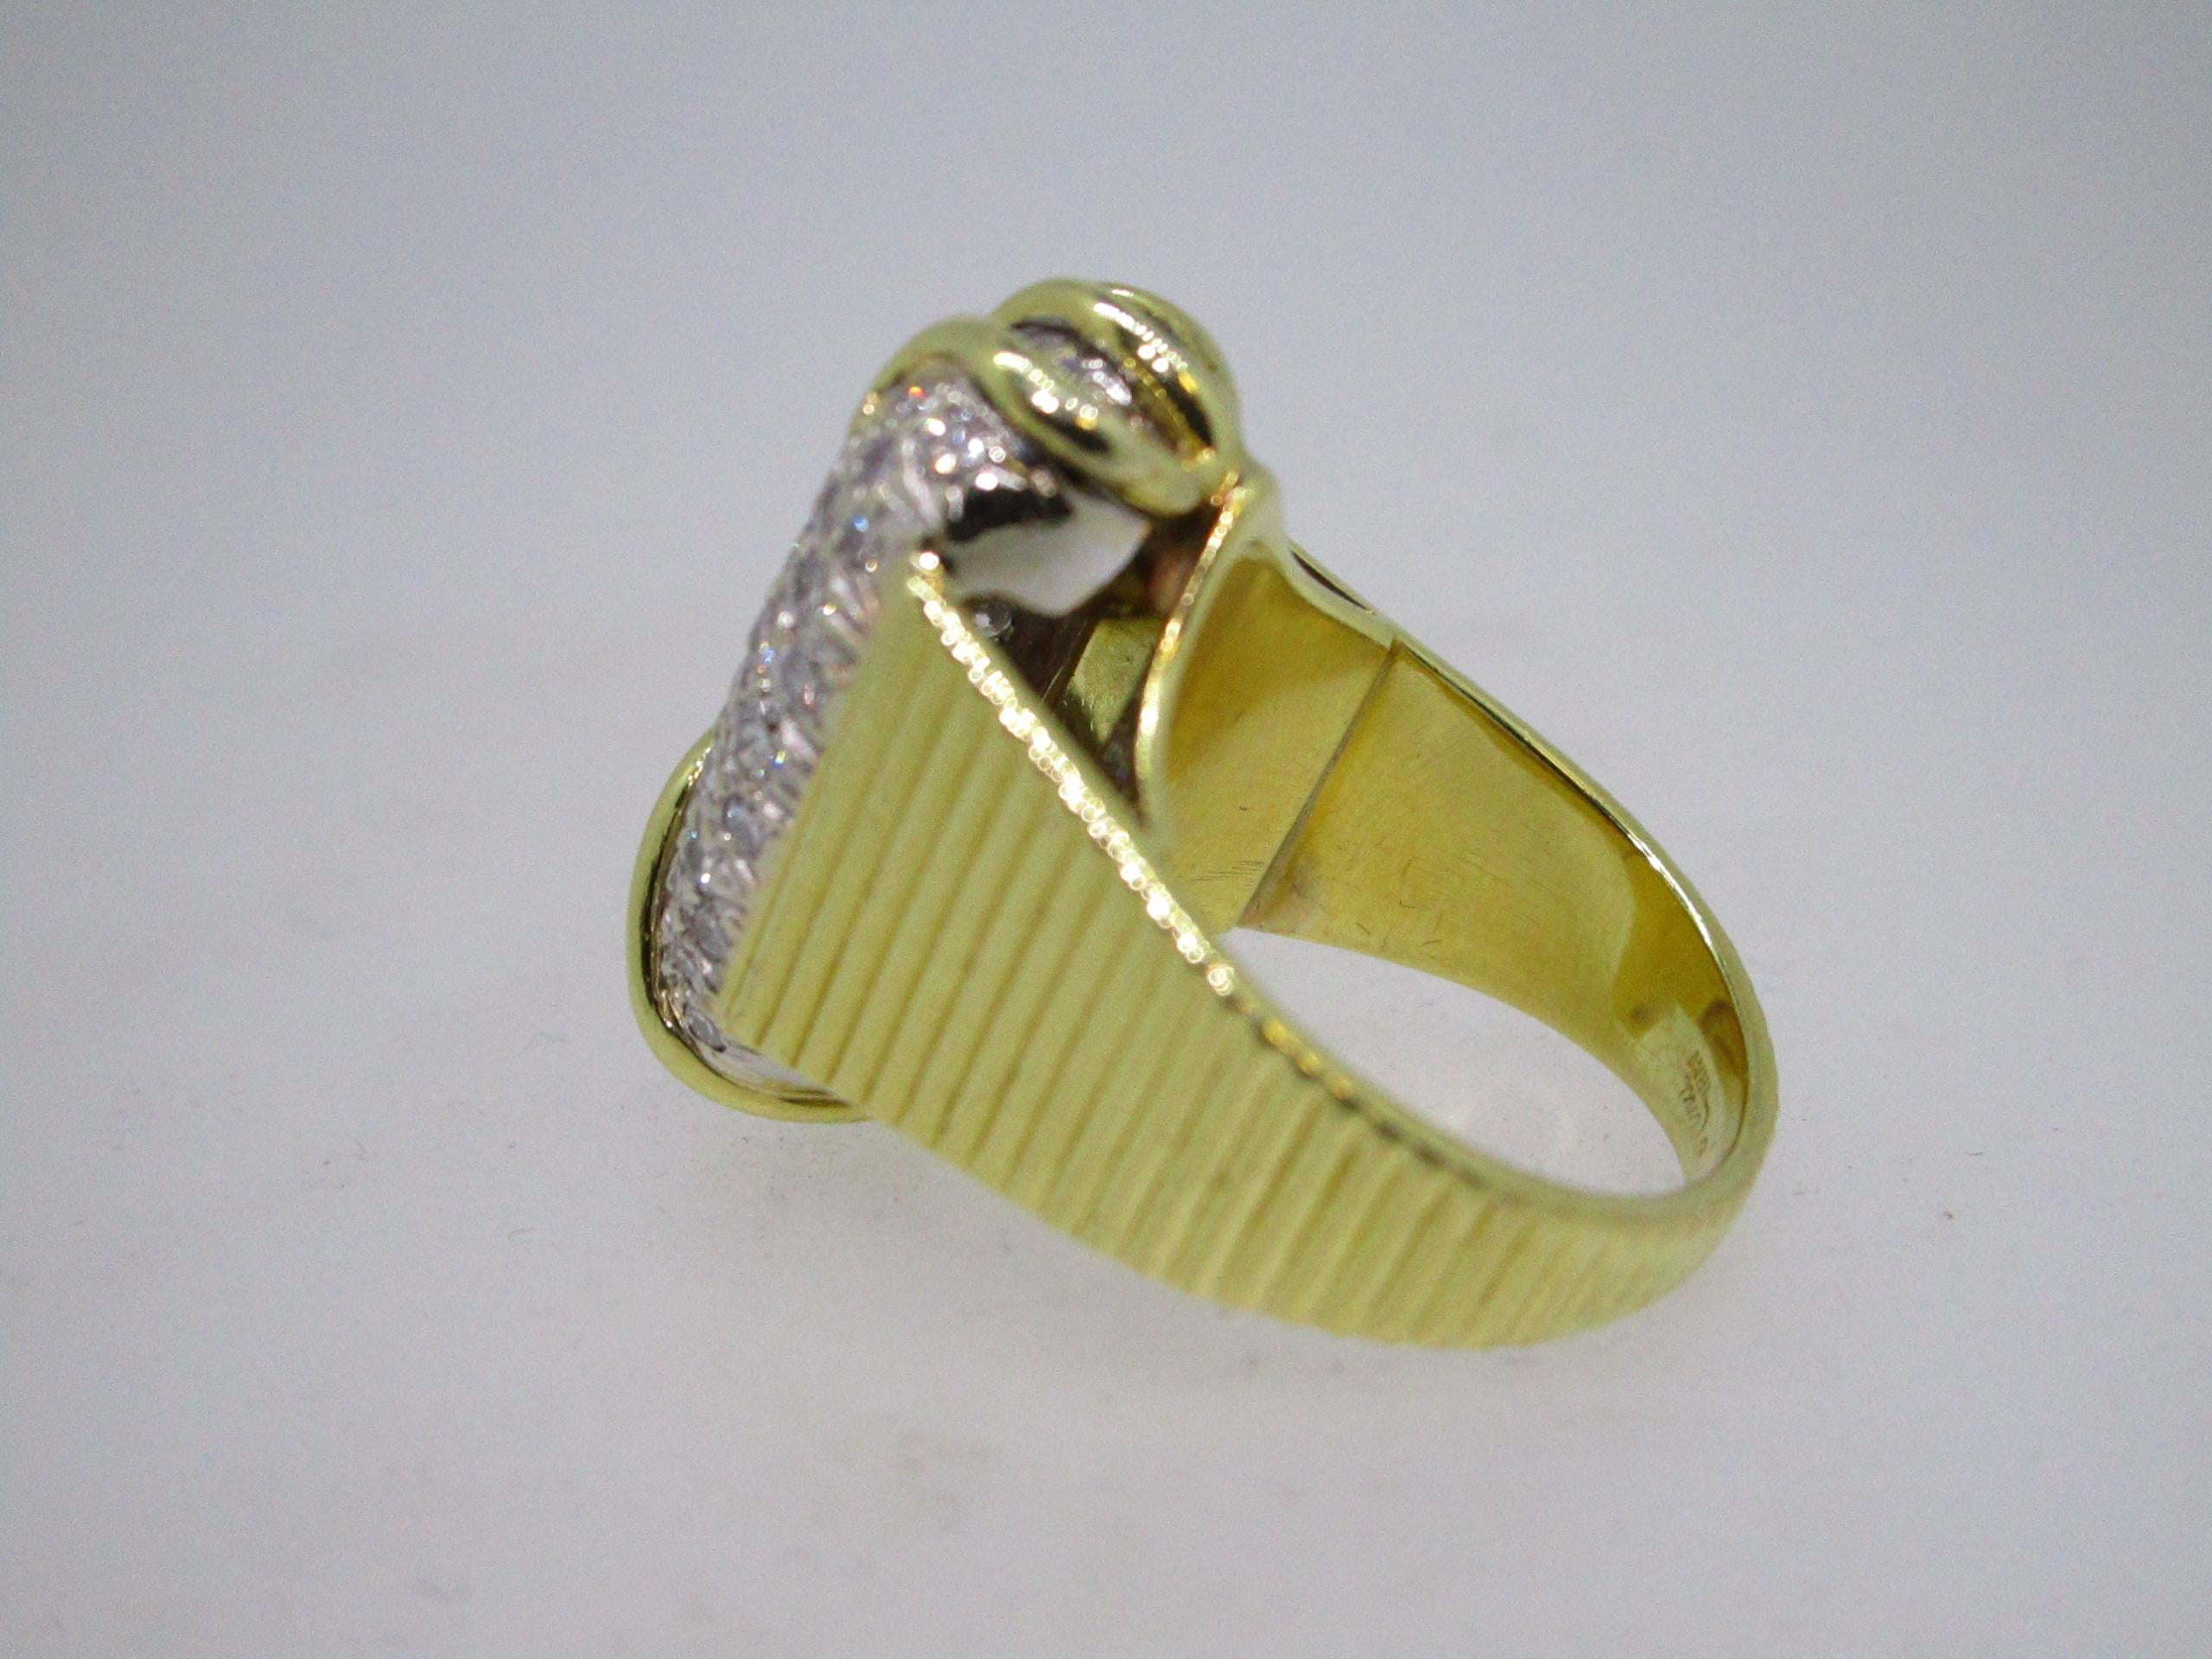 Round Cut Pave Diamond Ring in 18 Karat Yellow Gold